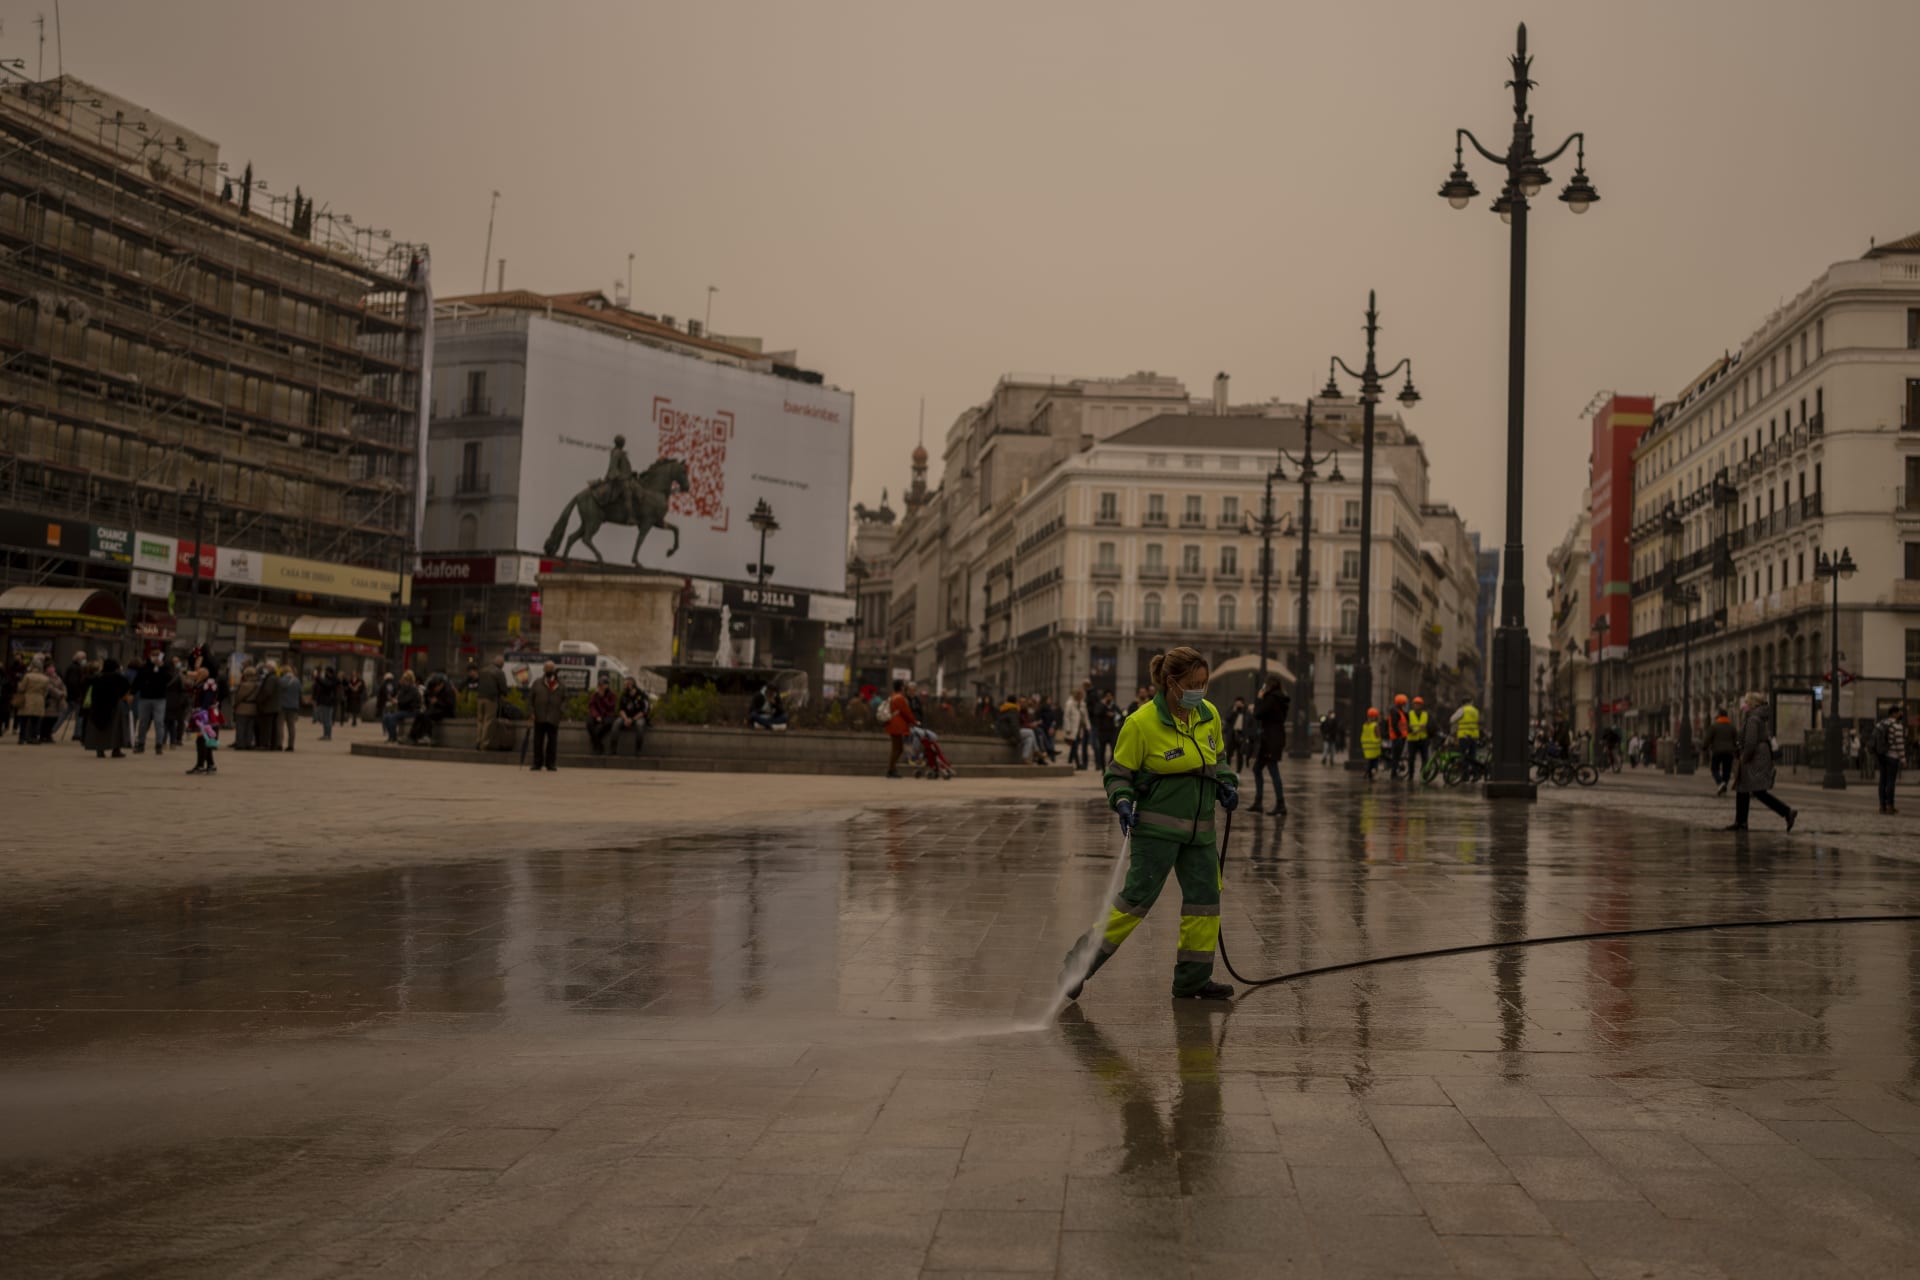 Pracovník města uklízí písek v centru Madridu.